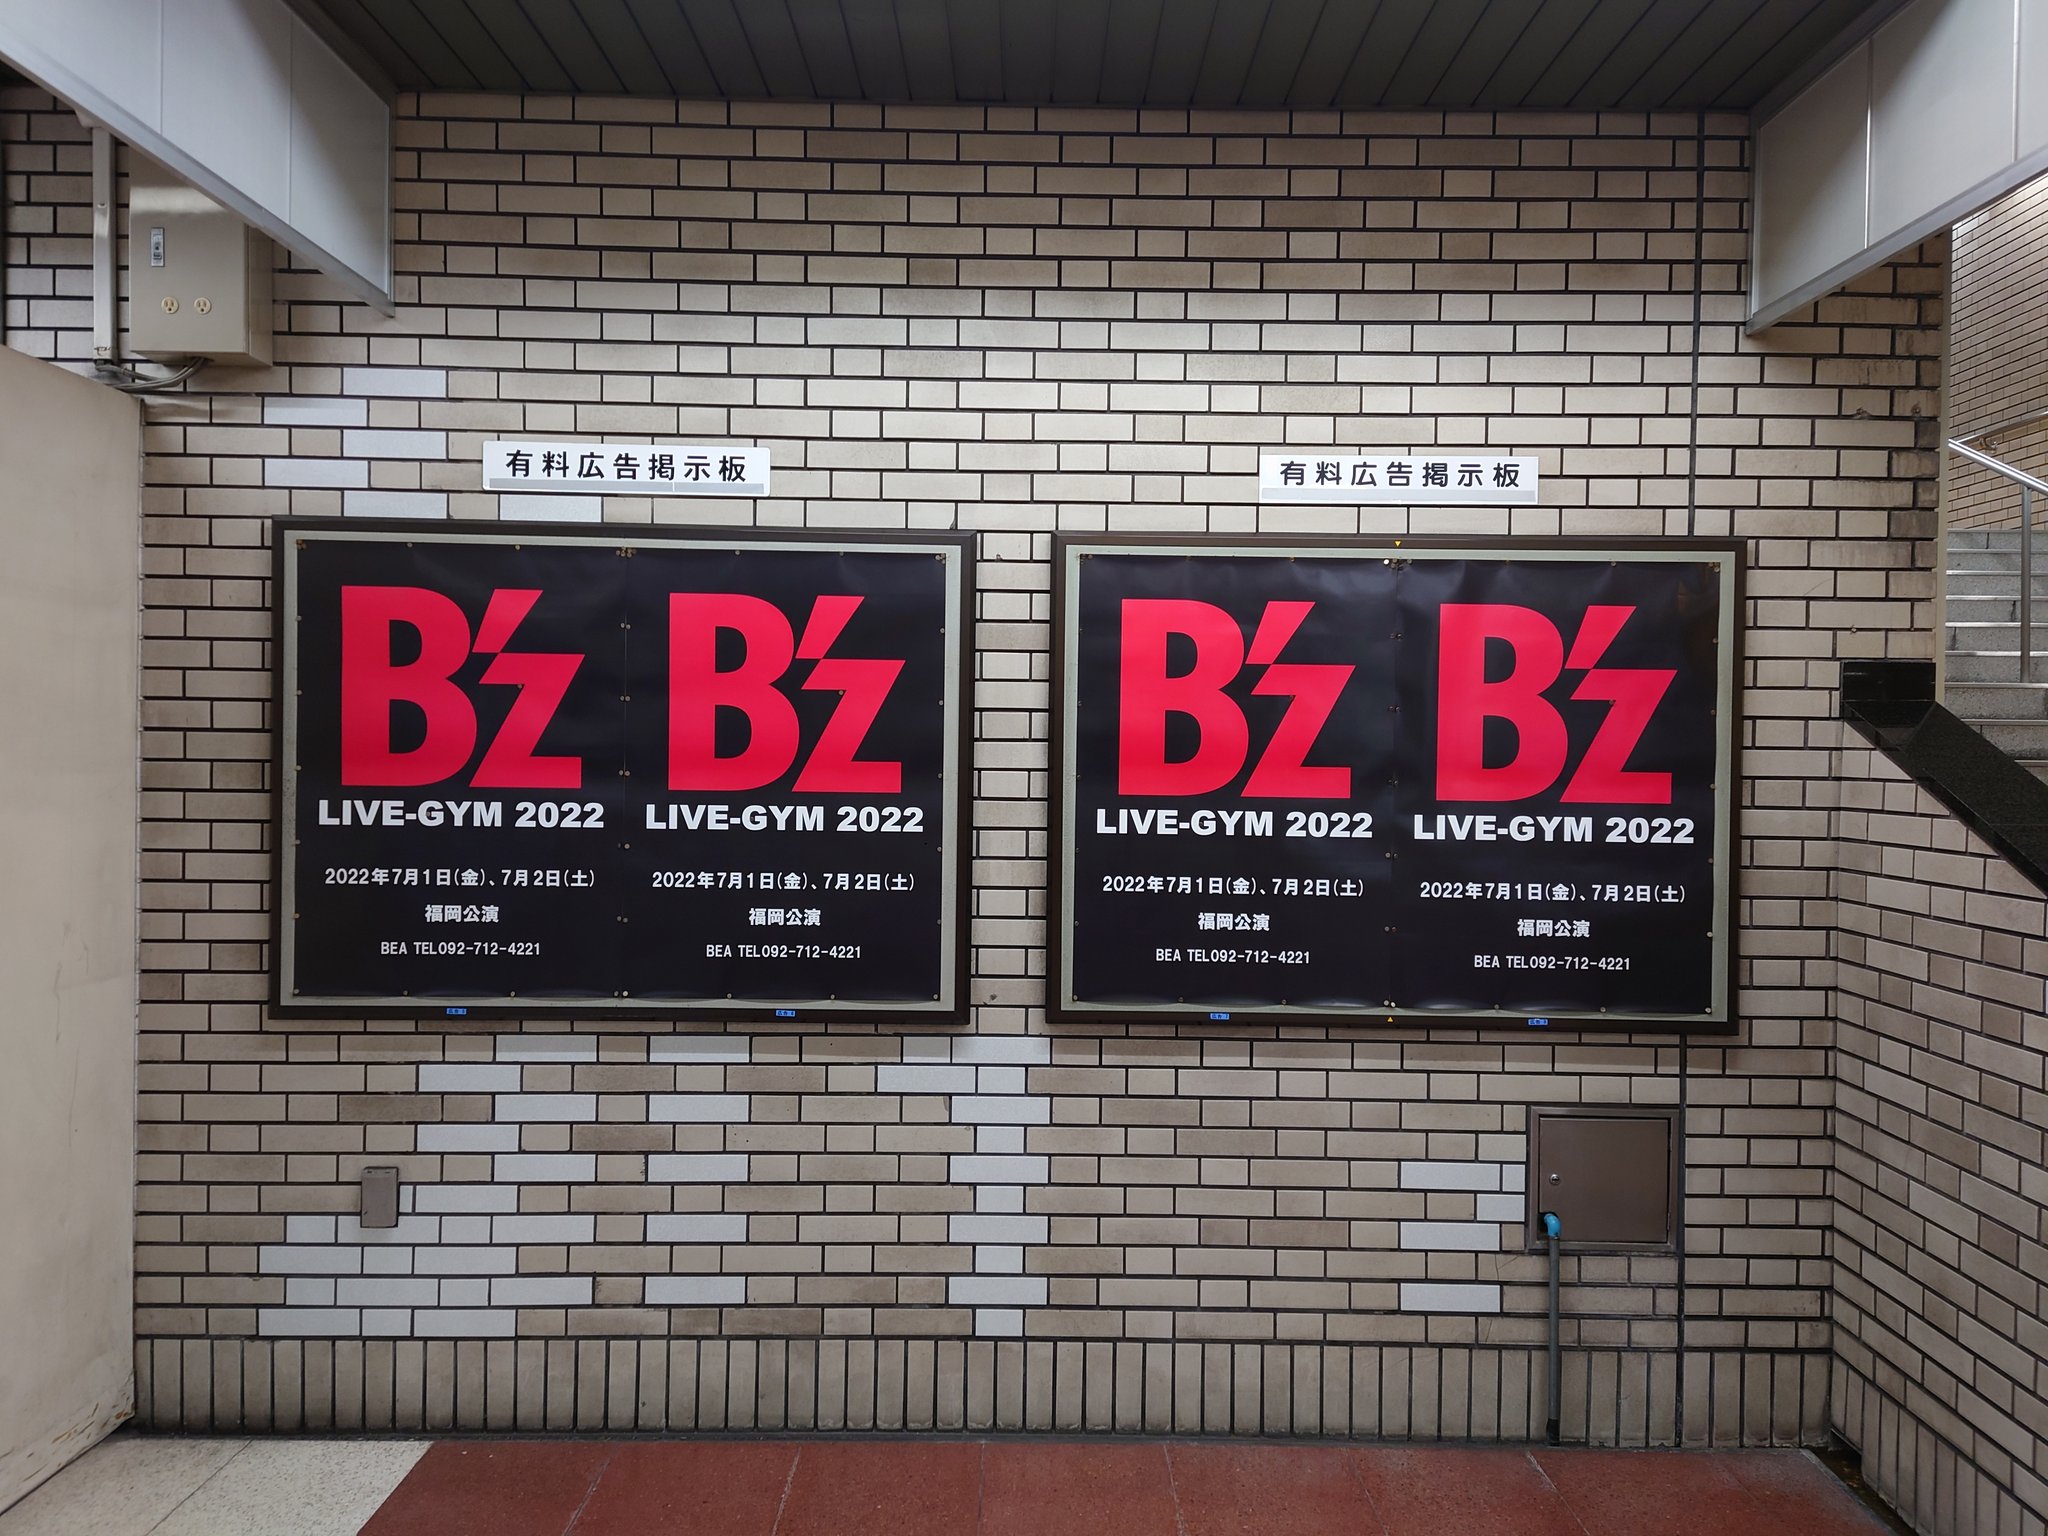 福岡市営地下鉄・呉服町駅に掲出された「B'z LIVE-GYM 2022」福岡公演の告知ポスターの写真